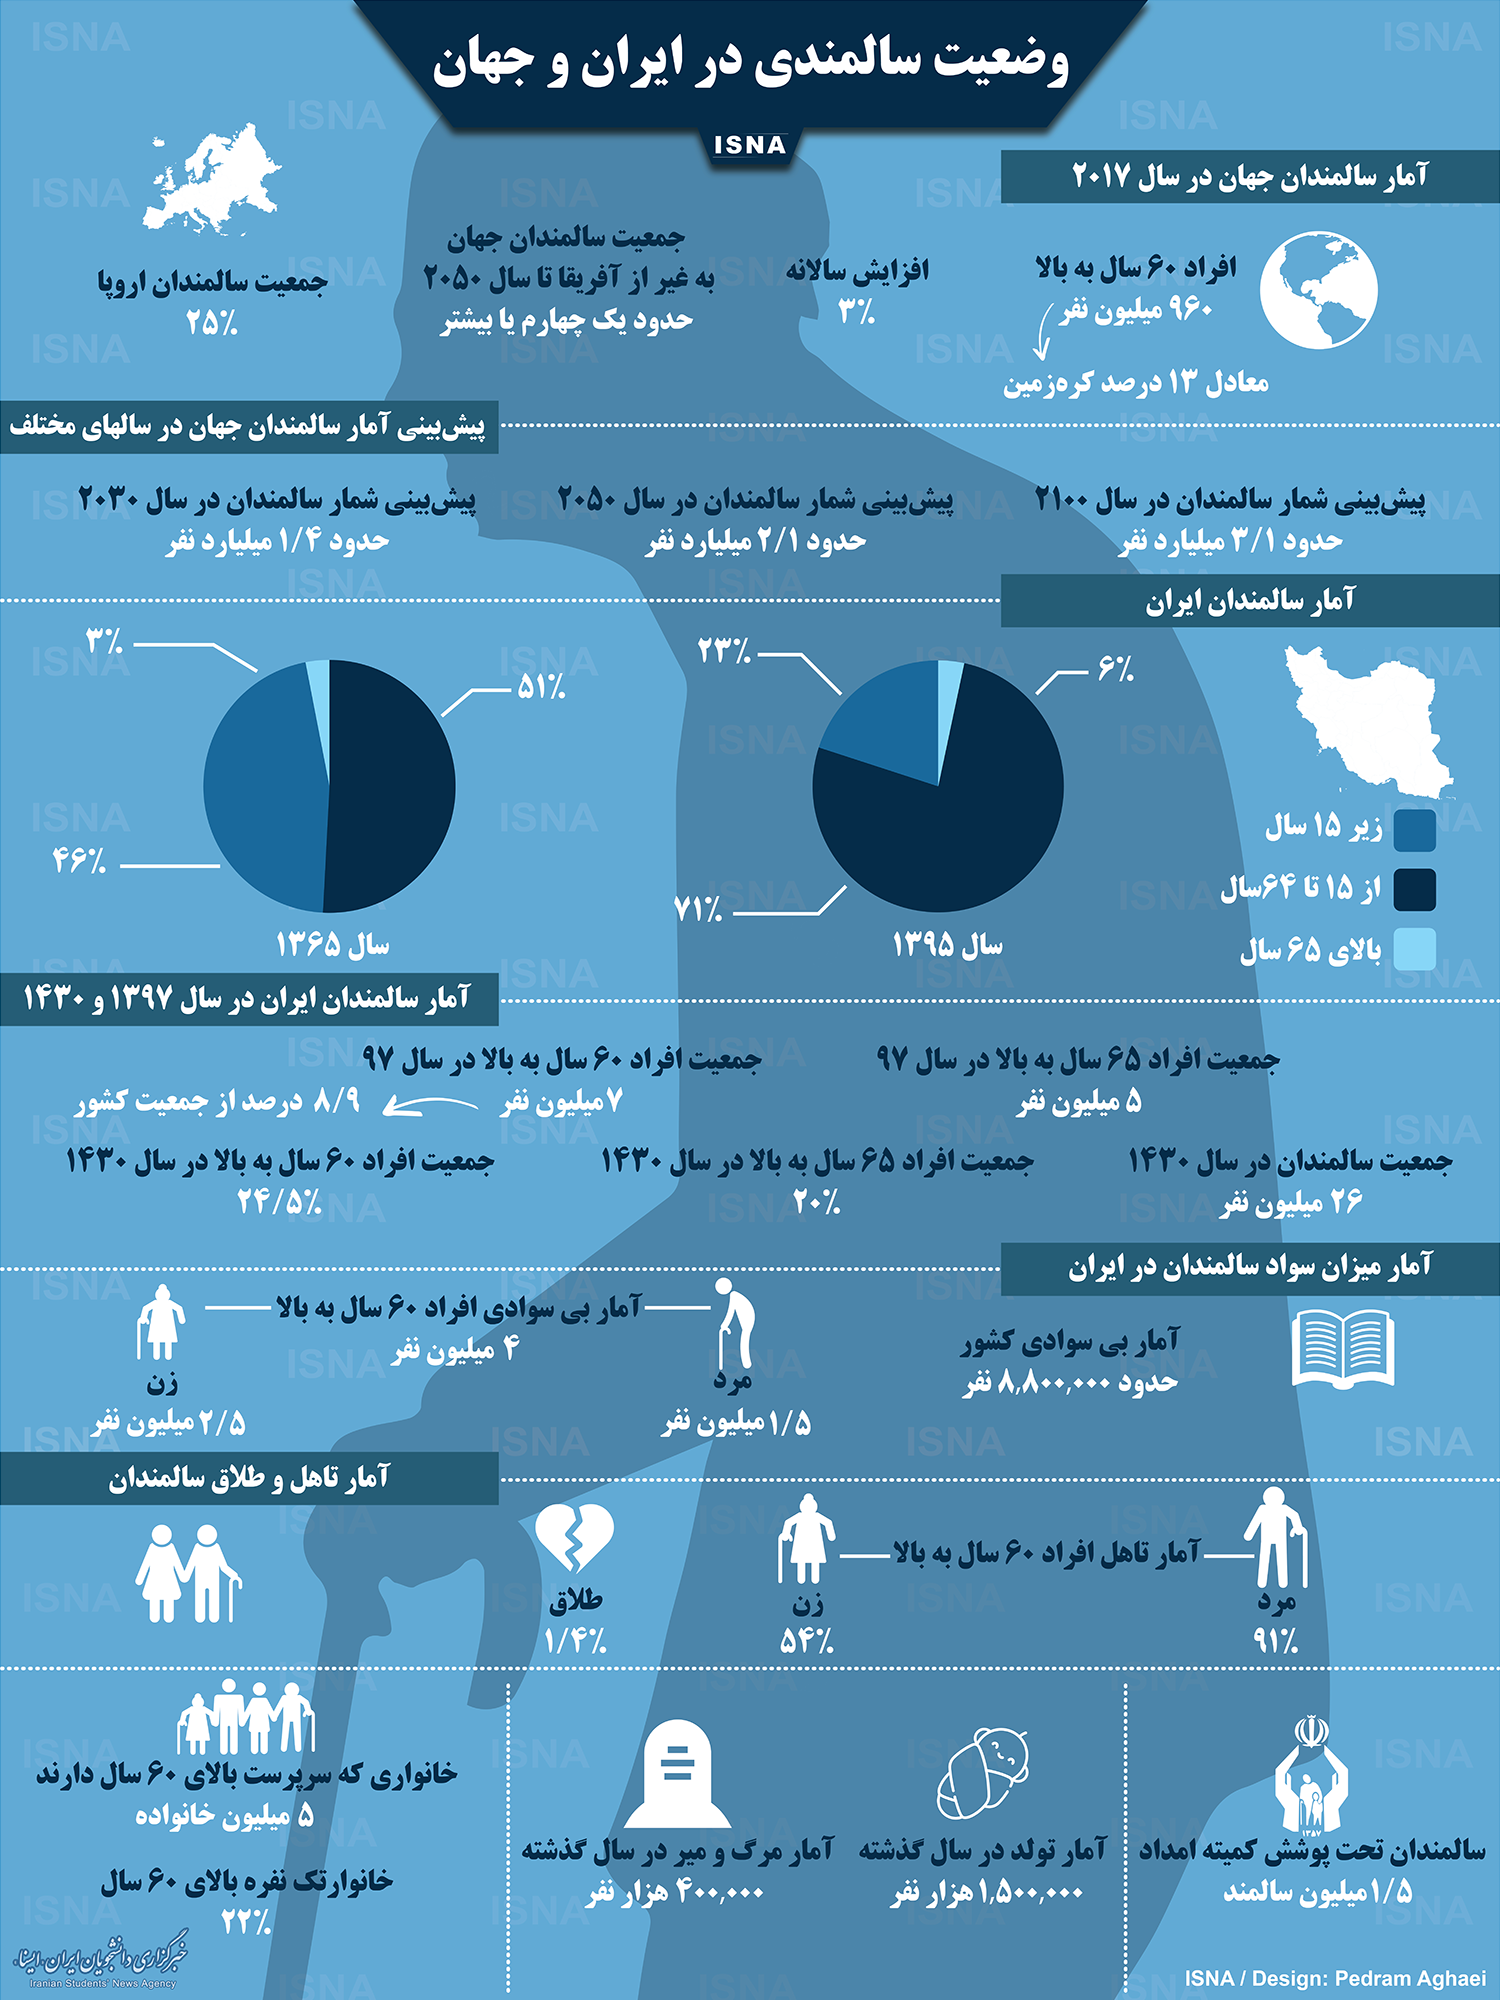 اینفوگرافیک/ وضعیت سالمندی در ایران و جهان